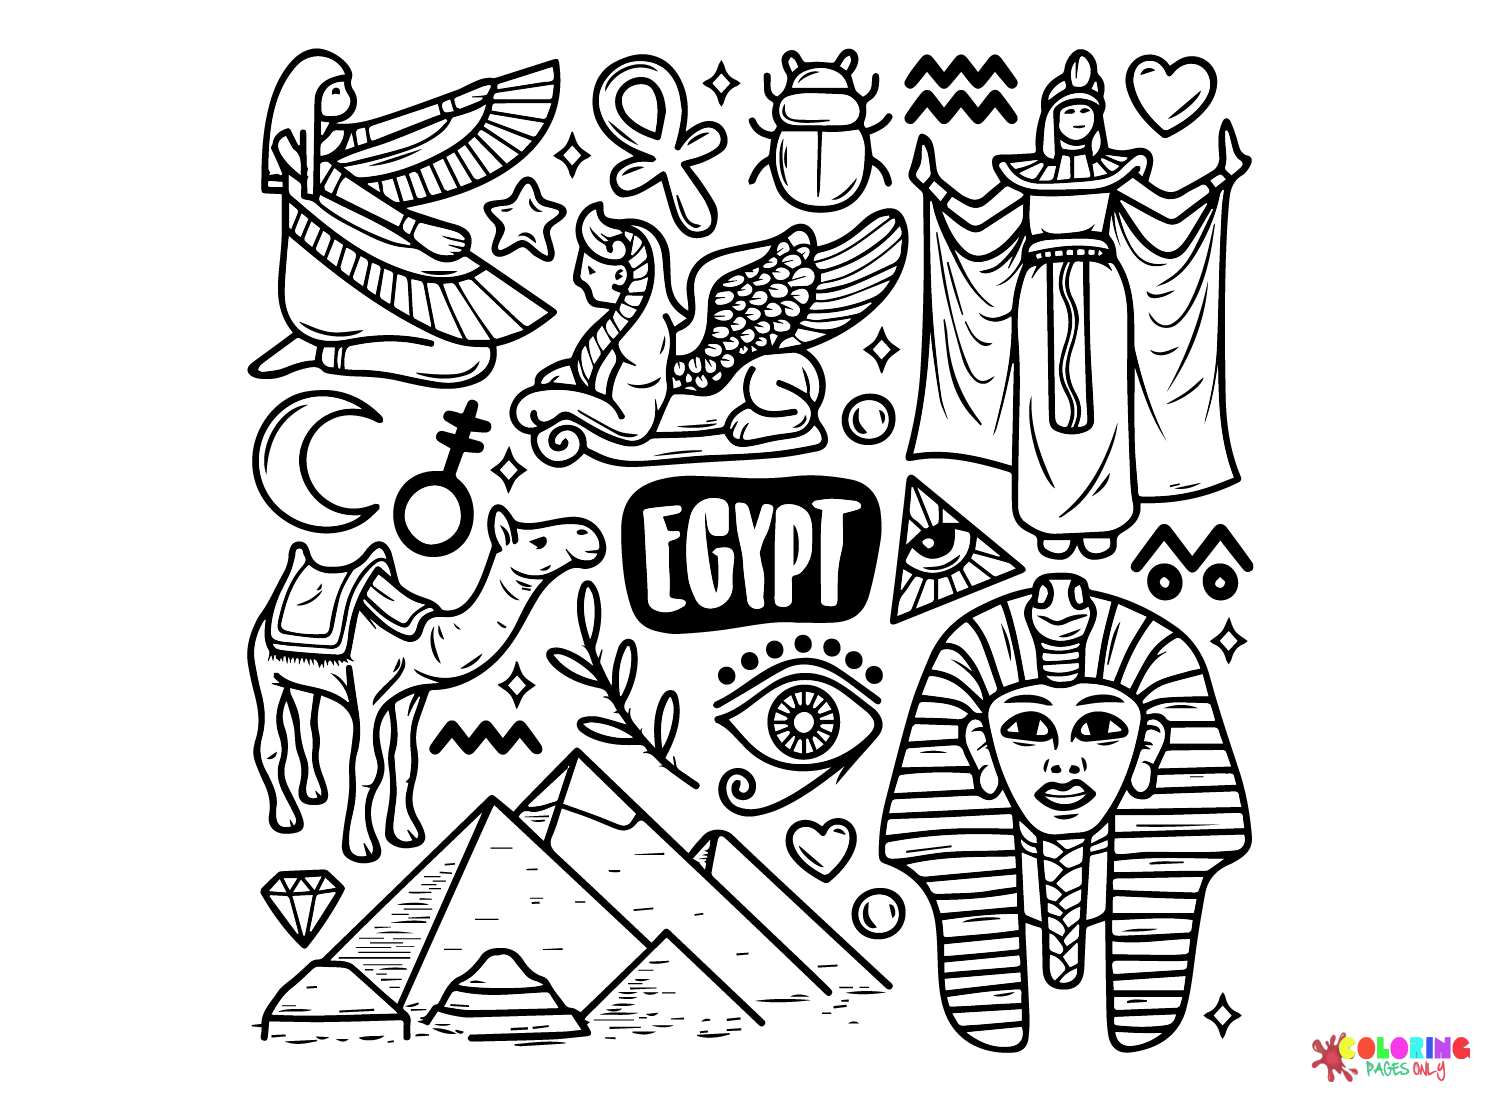 Gratis Vector Egypte iconen Hand getrokken doodle uit het oude Egypte